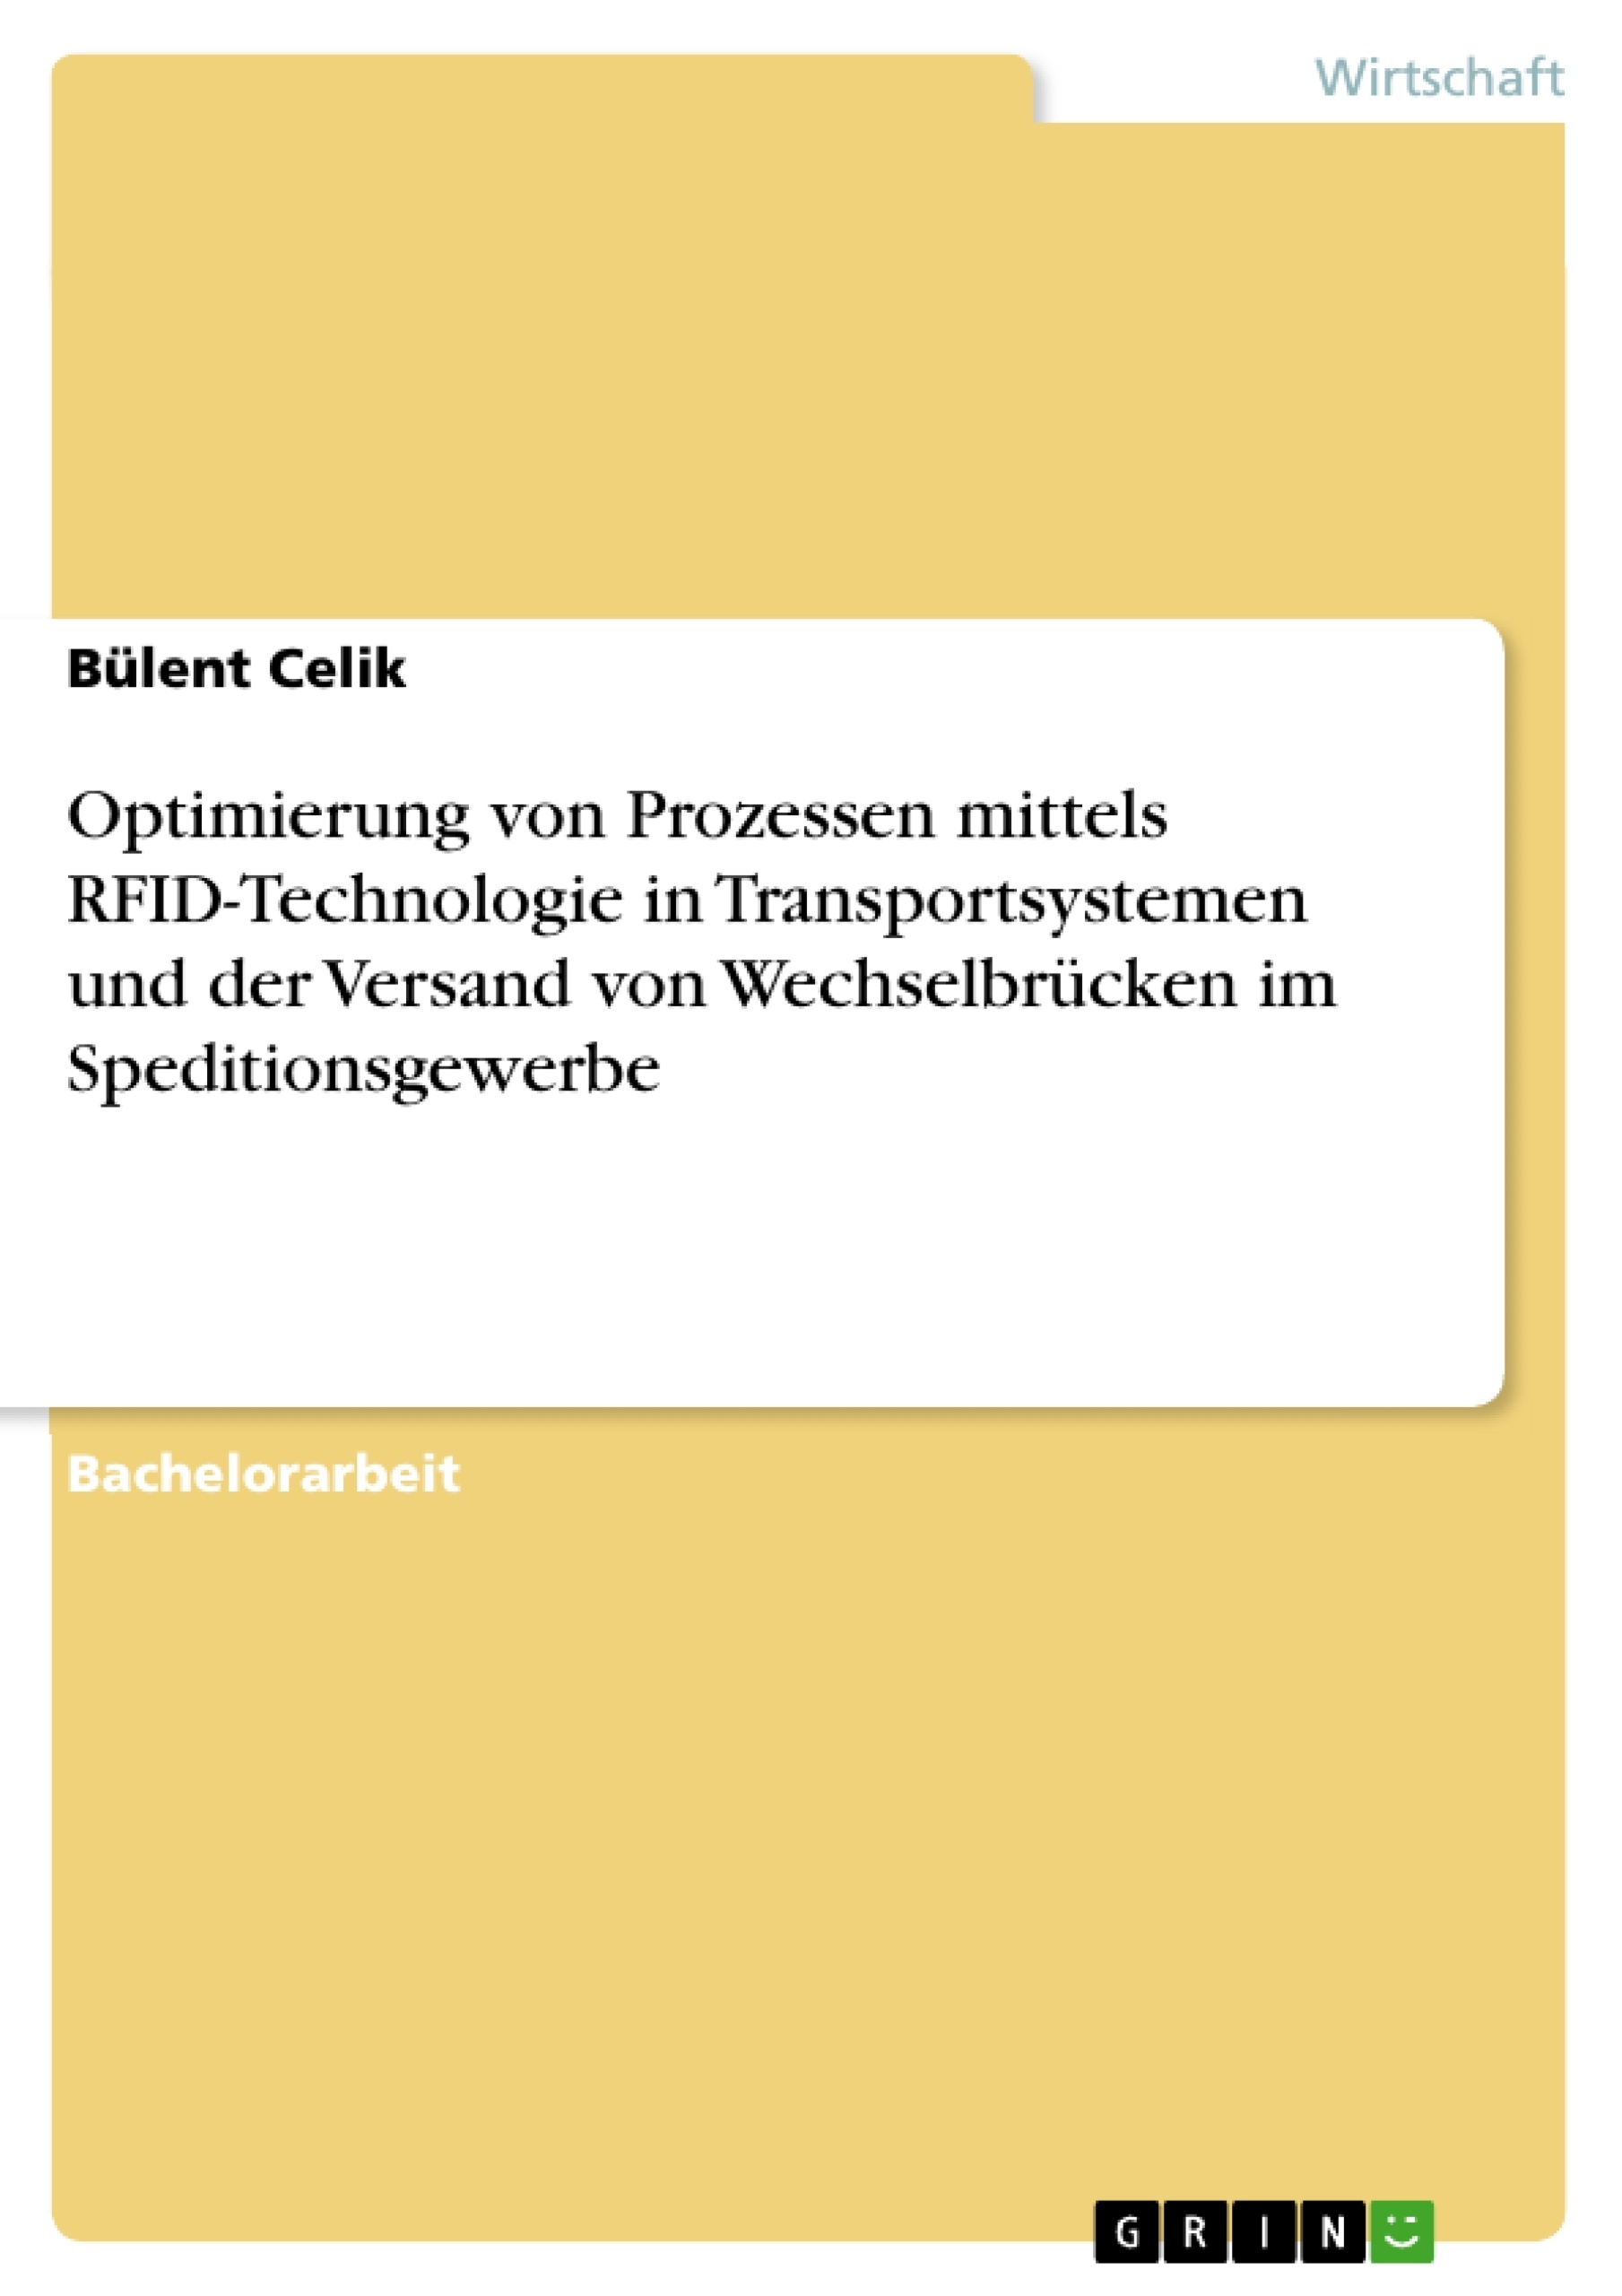 Titre: Optimierung von Prozessen mittels RFID-Technologie in Transportsystemen und der Versand von Wechselbrücken im Speditionsgewerbe